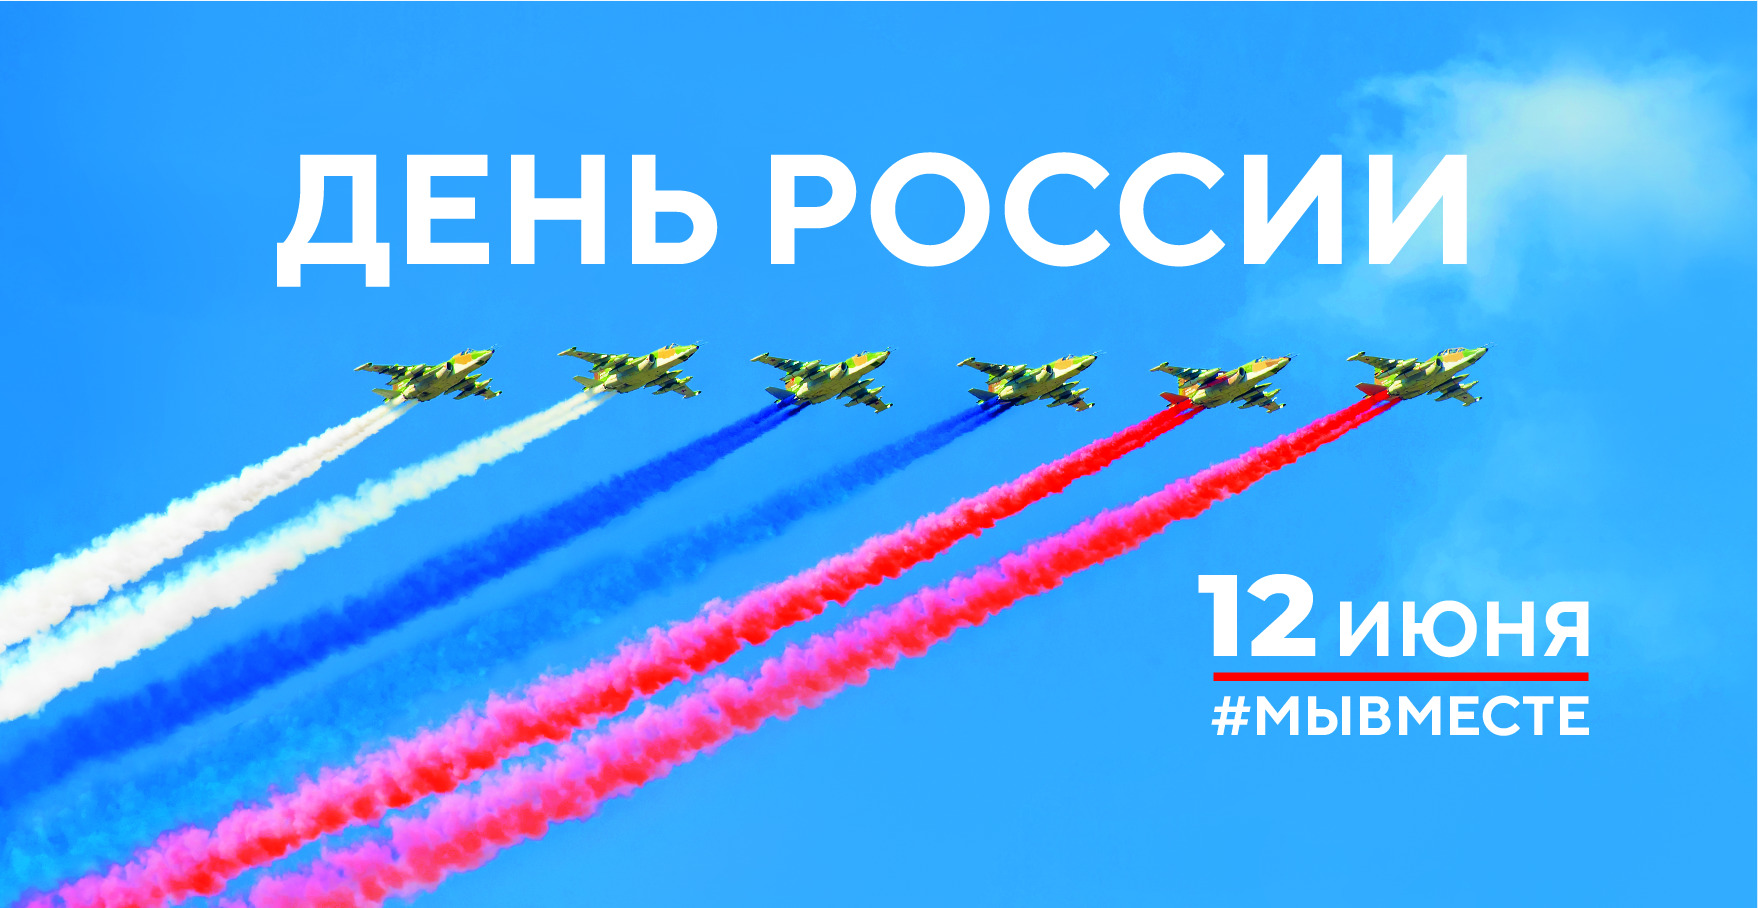 Сегодня День России!